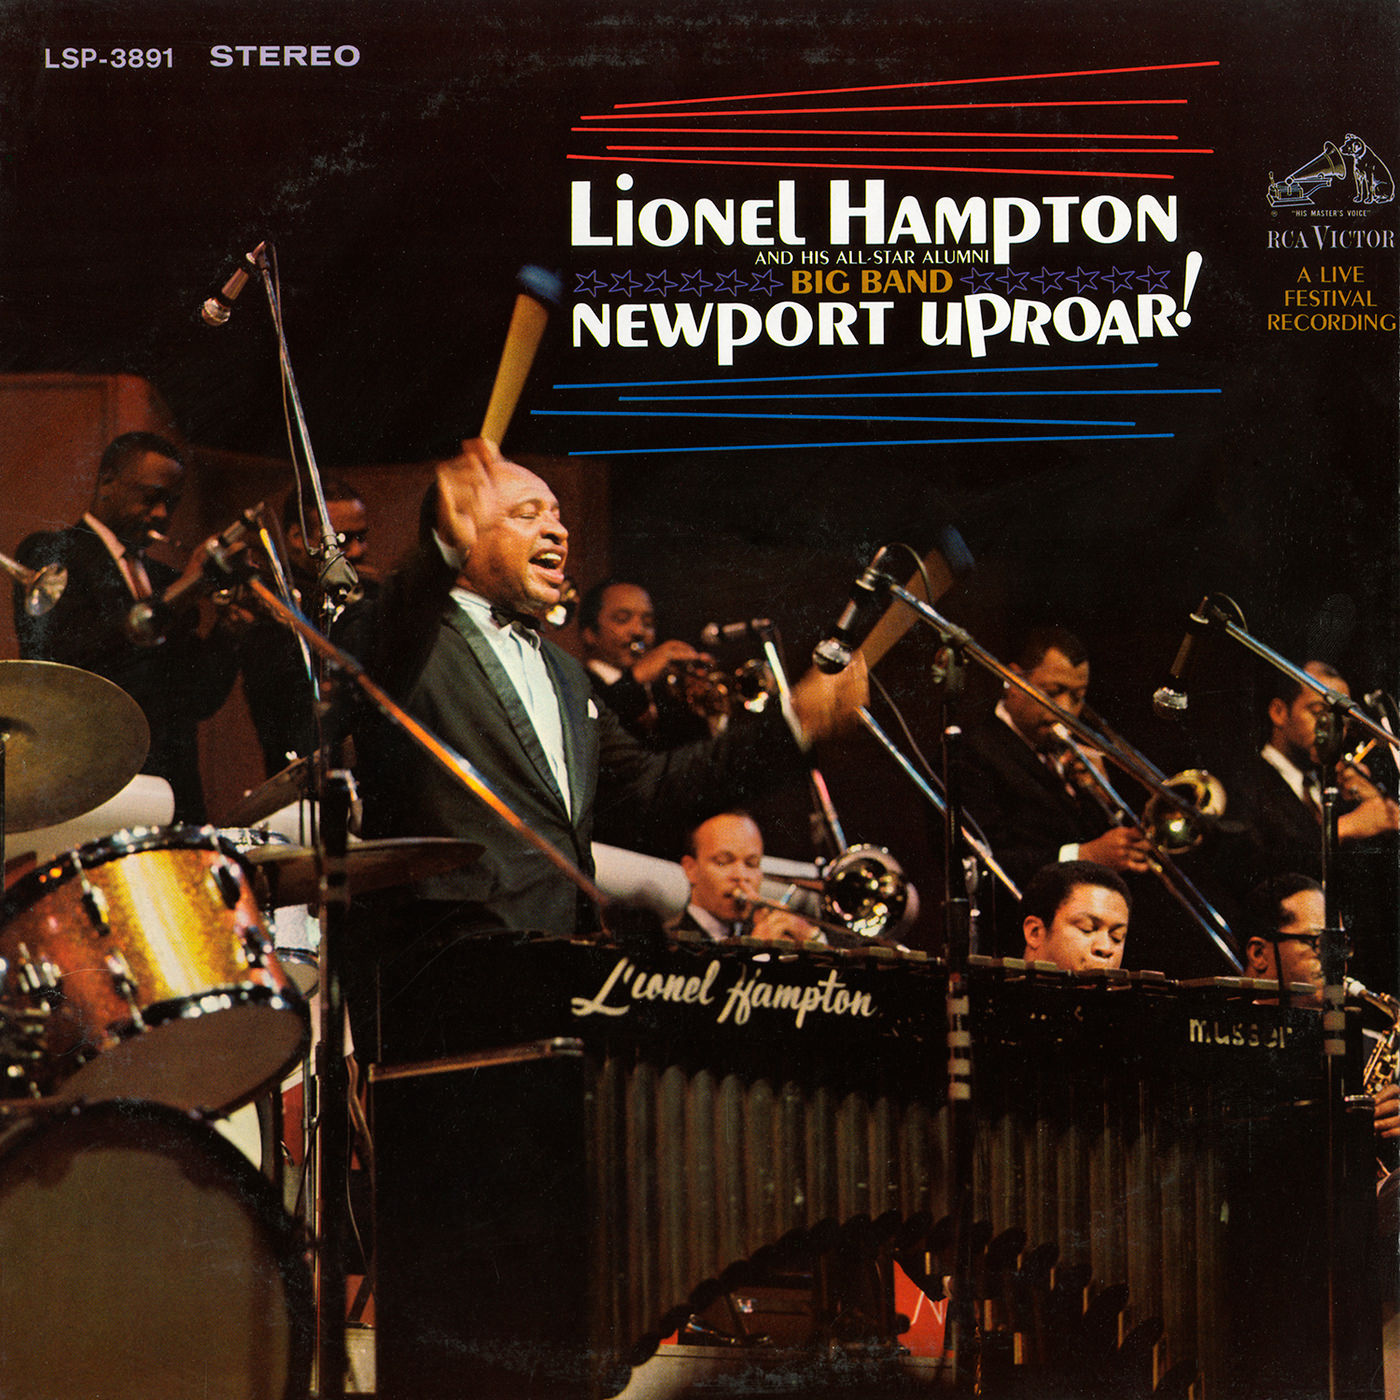 Lionel Hampton & His All-Star Alumni Big Band - Newport Uproar (1968/2017) [AcousticSounds FLAC 24bit/192kHz]